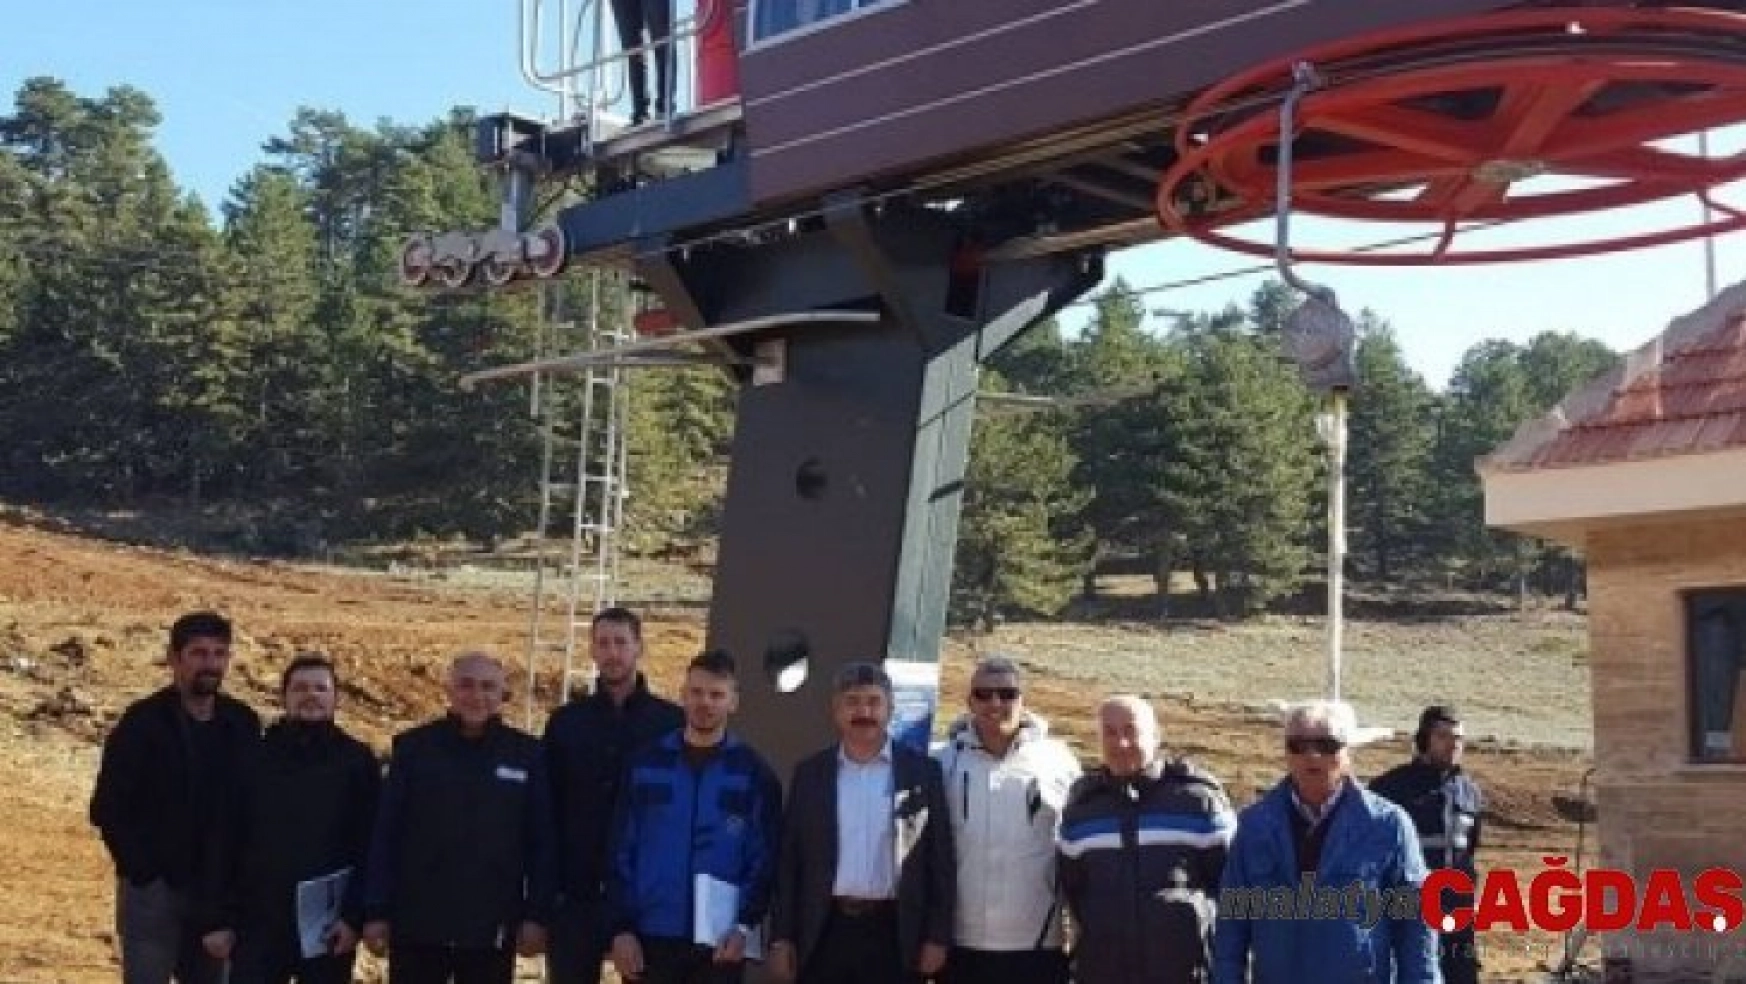 Muratdağı Termal Kayak Merkezi, yeni sezona hazırlanıyor